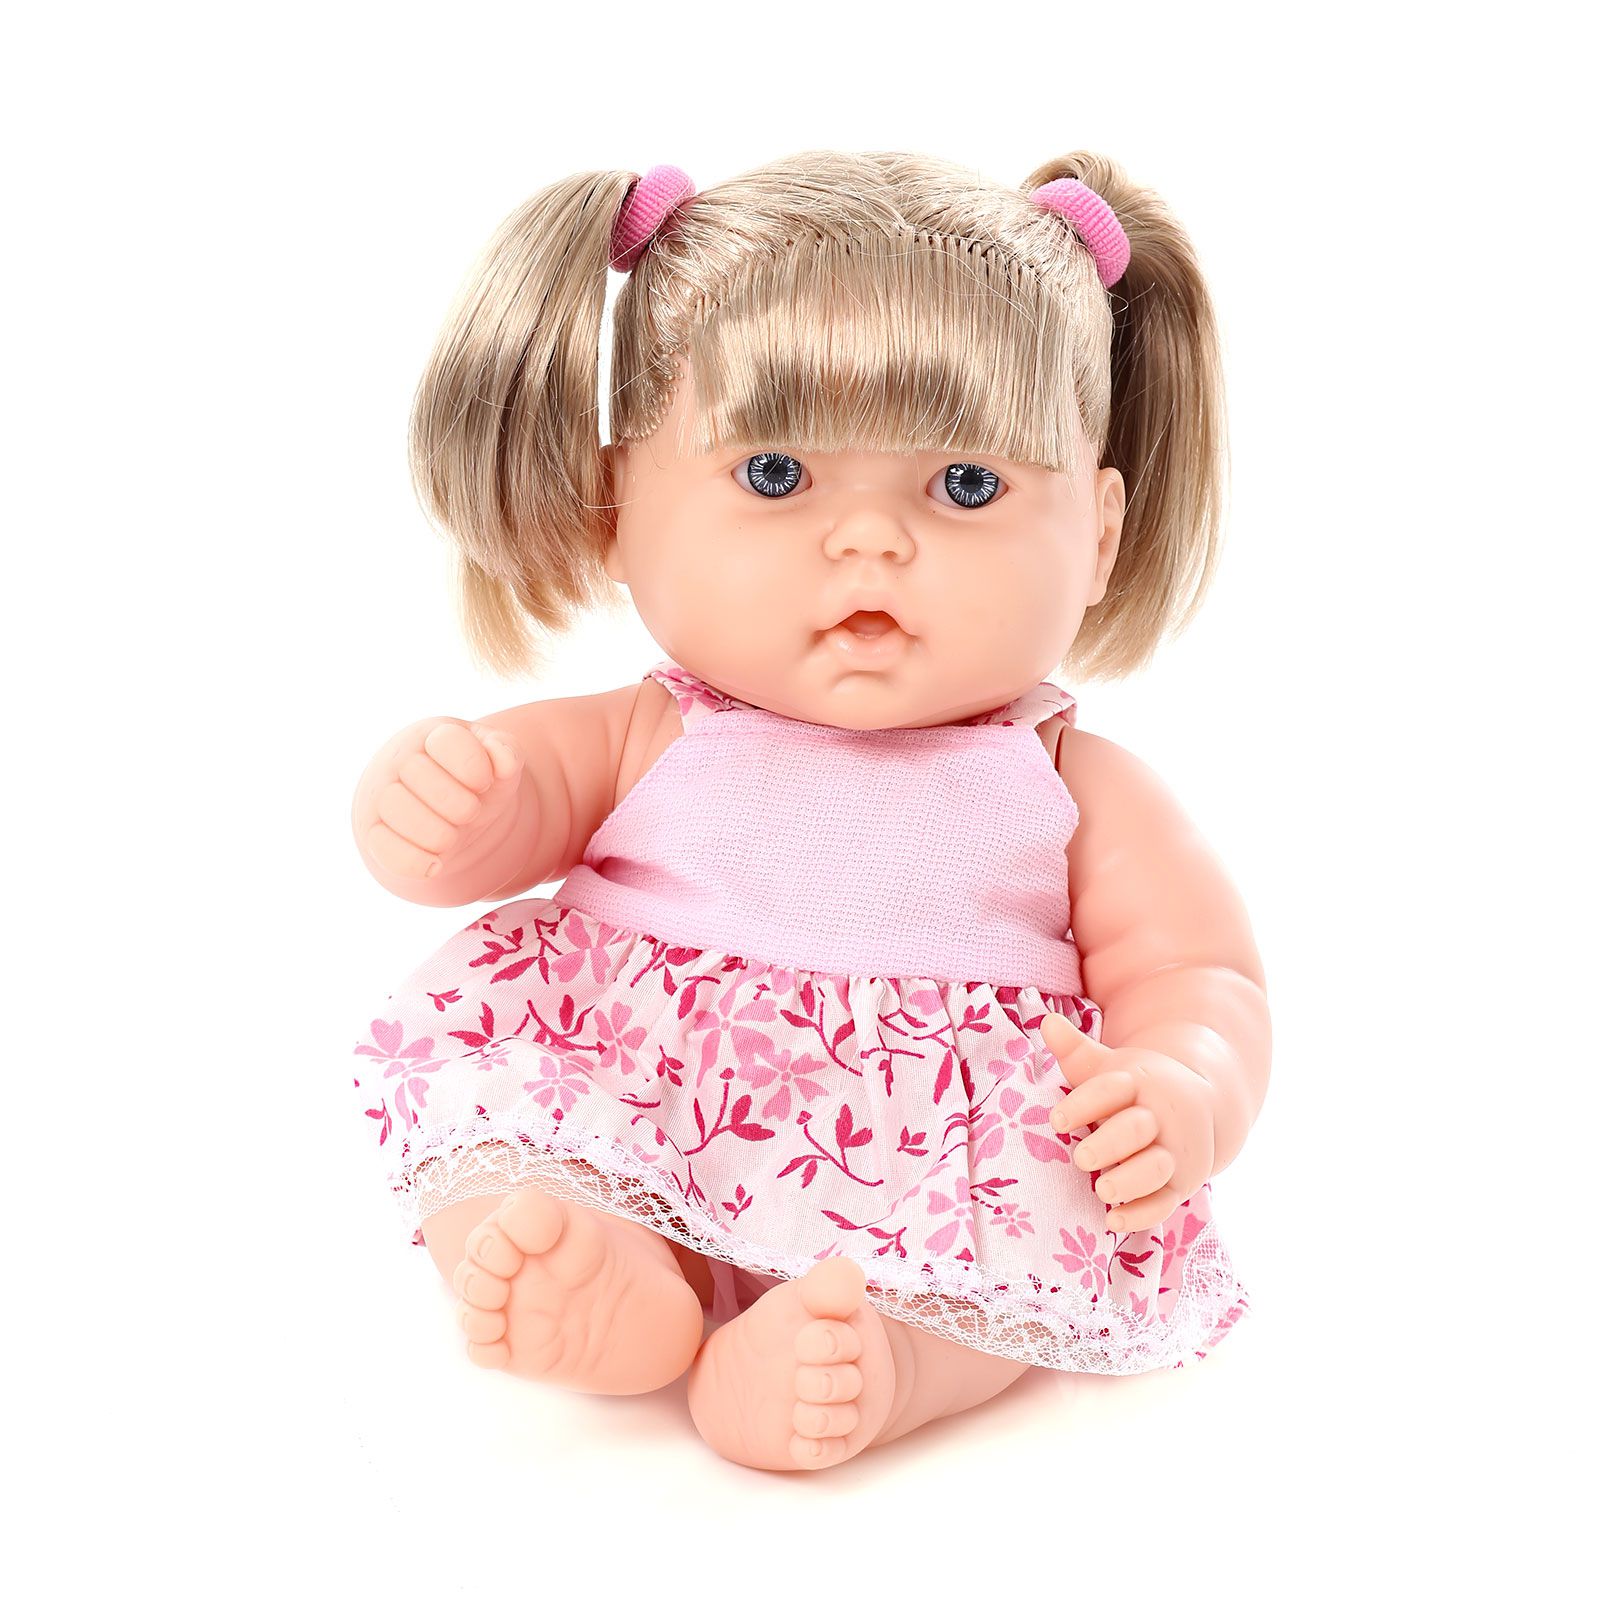 Será que você conhece os principais tipos de bonecas? Veja aqui!